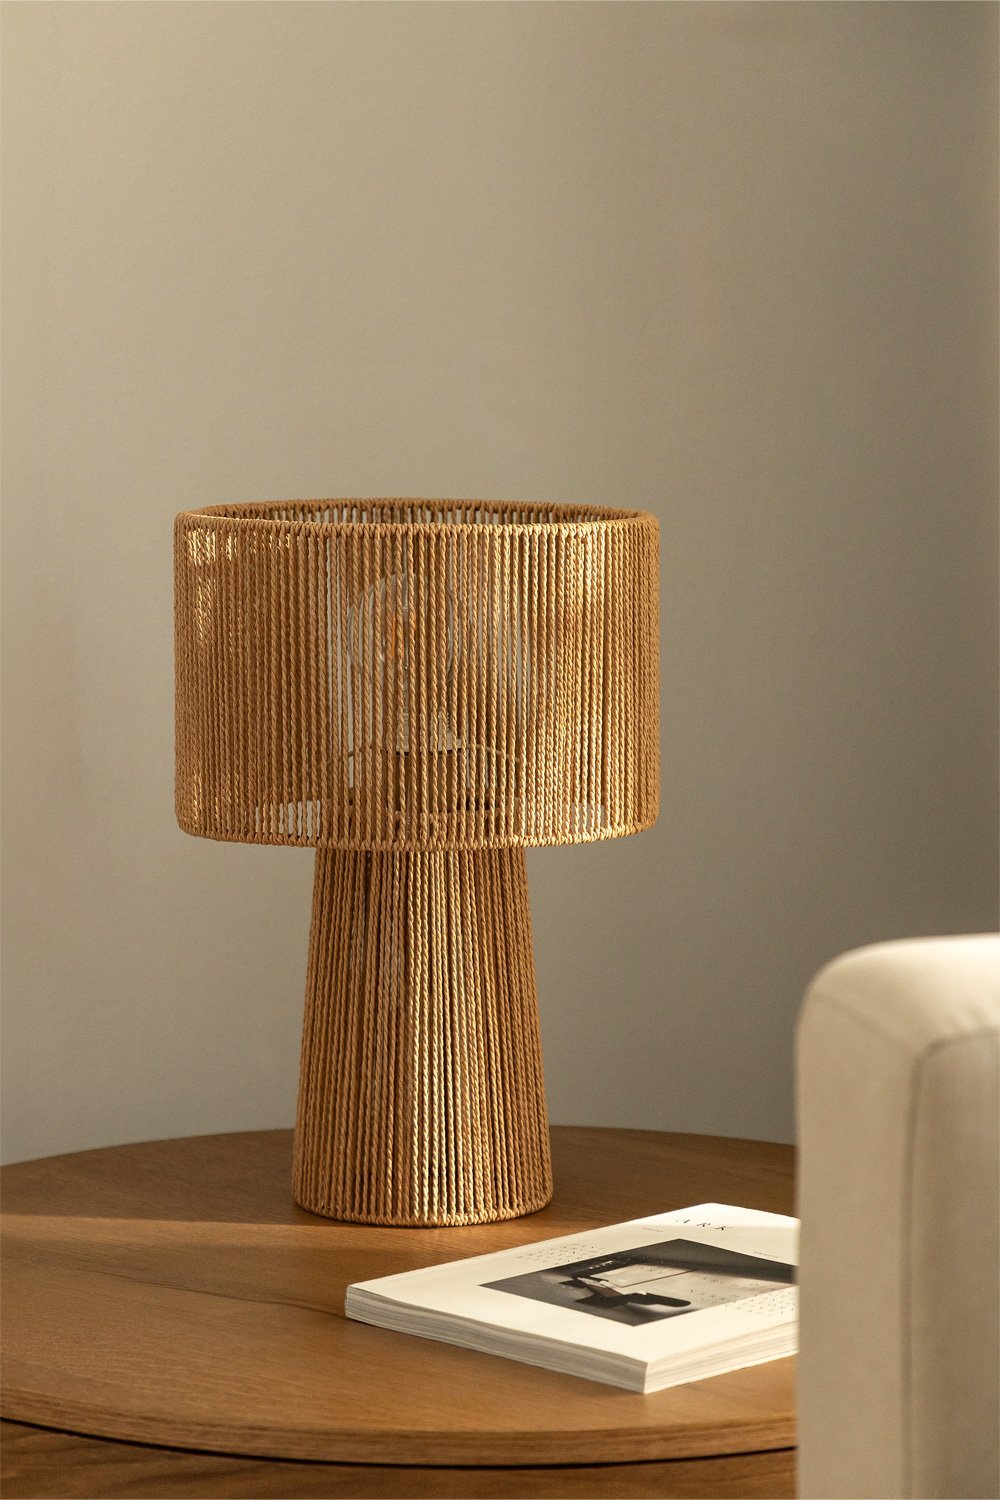 Carisa tafellamp van gevlochten papier, galerij beeld 1